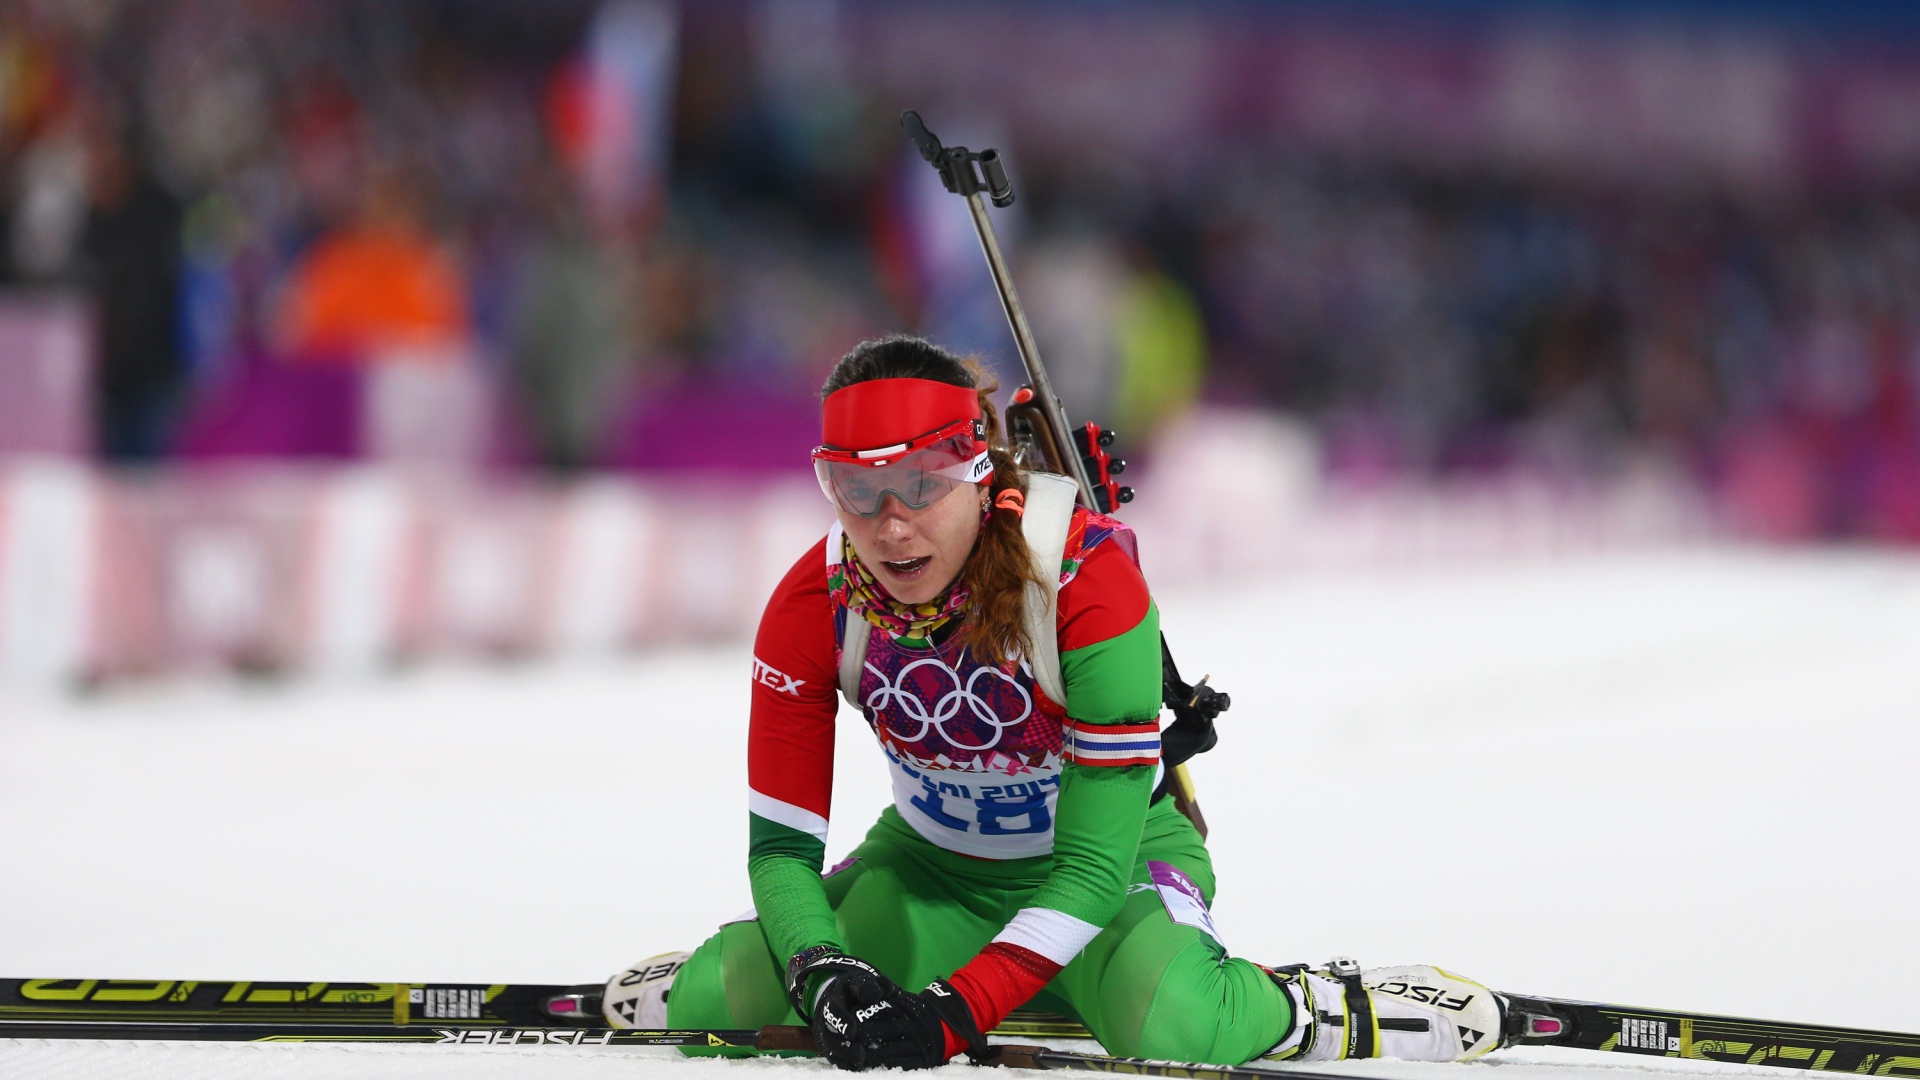 Обладательница бронзовой медали белорусская биатлонистка  Надежда Скардино на олимпиаде в Сочи